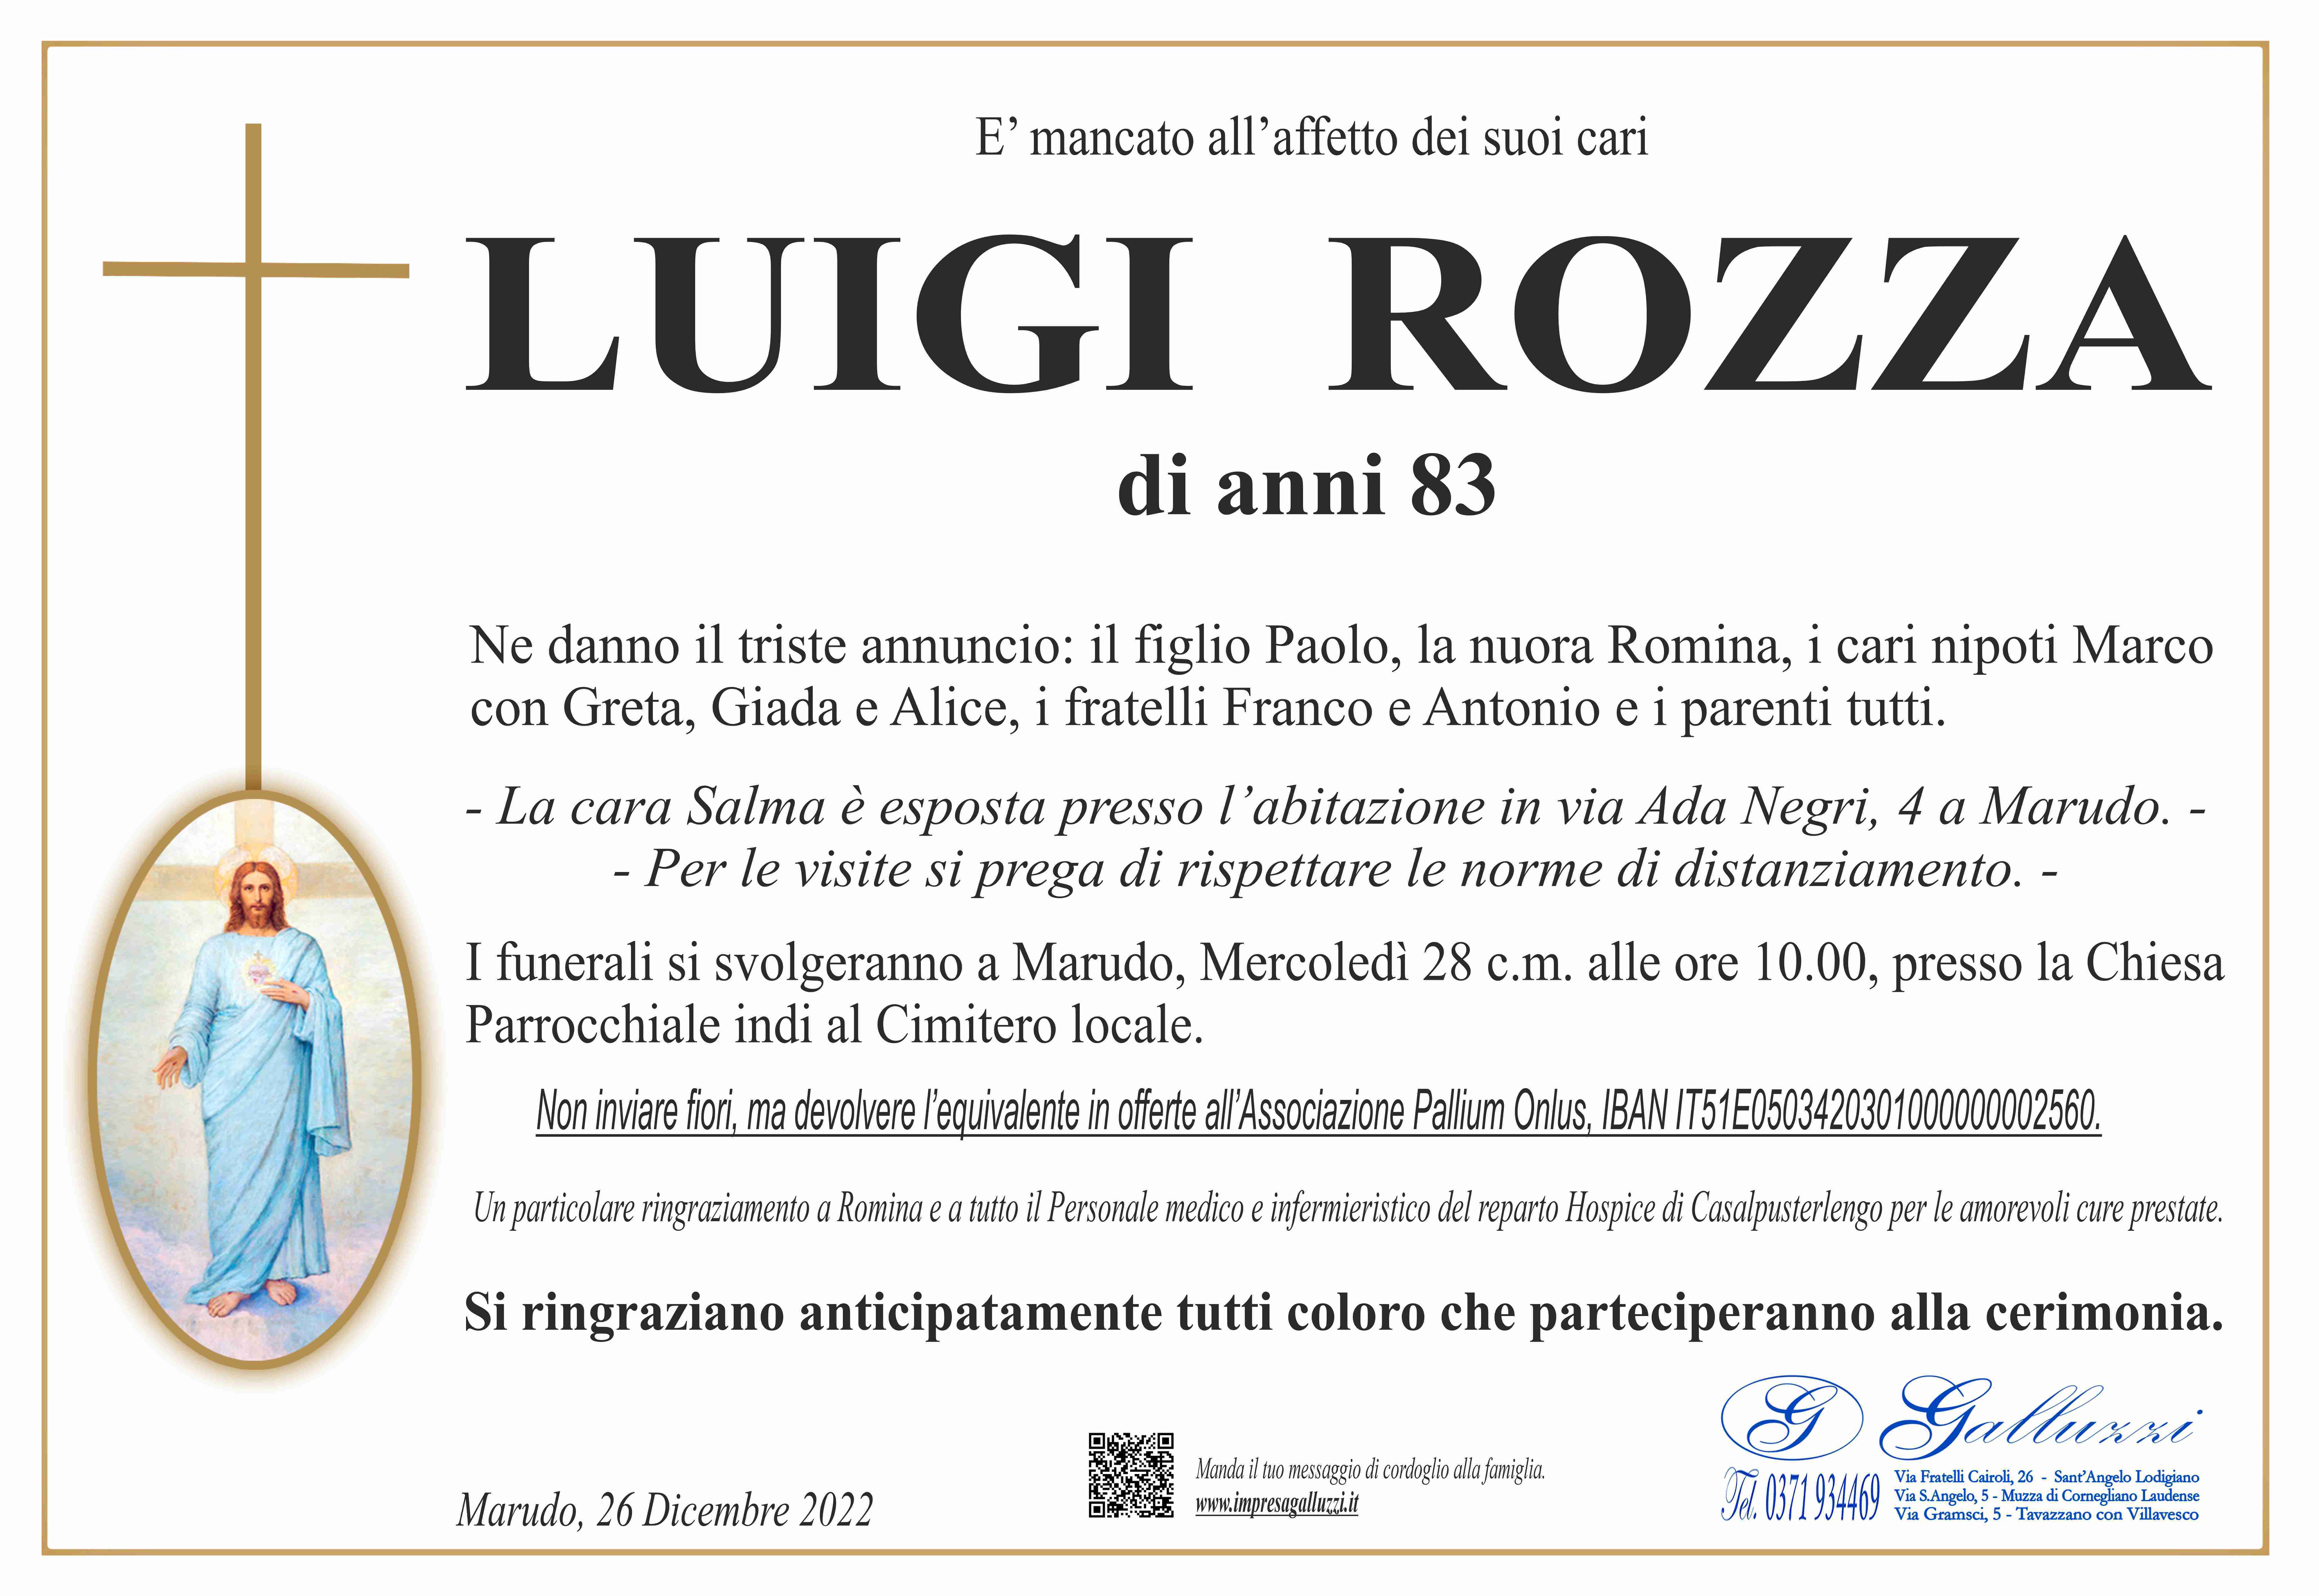 Luigi Rozza